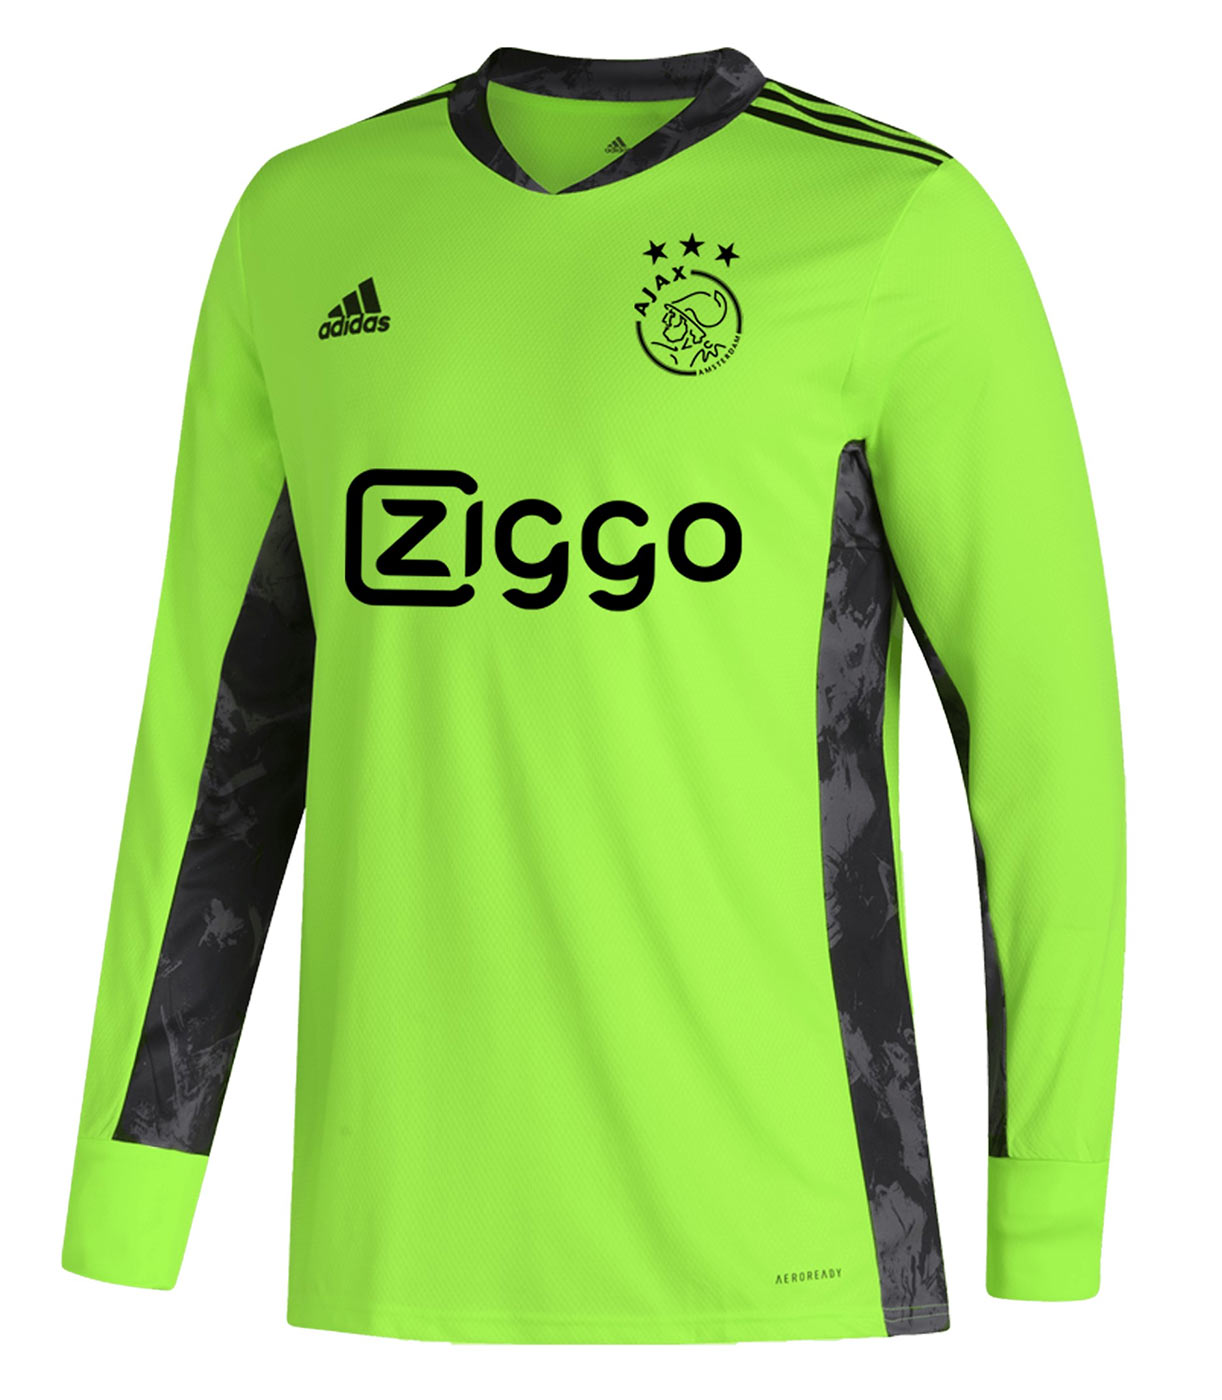 Maglia Ajax 2020-2021 Adidas, semplicemente bella!